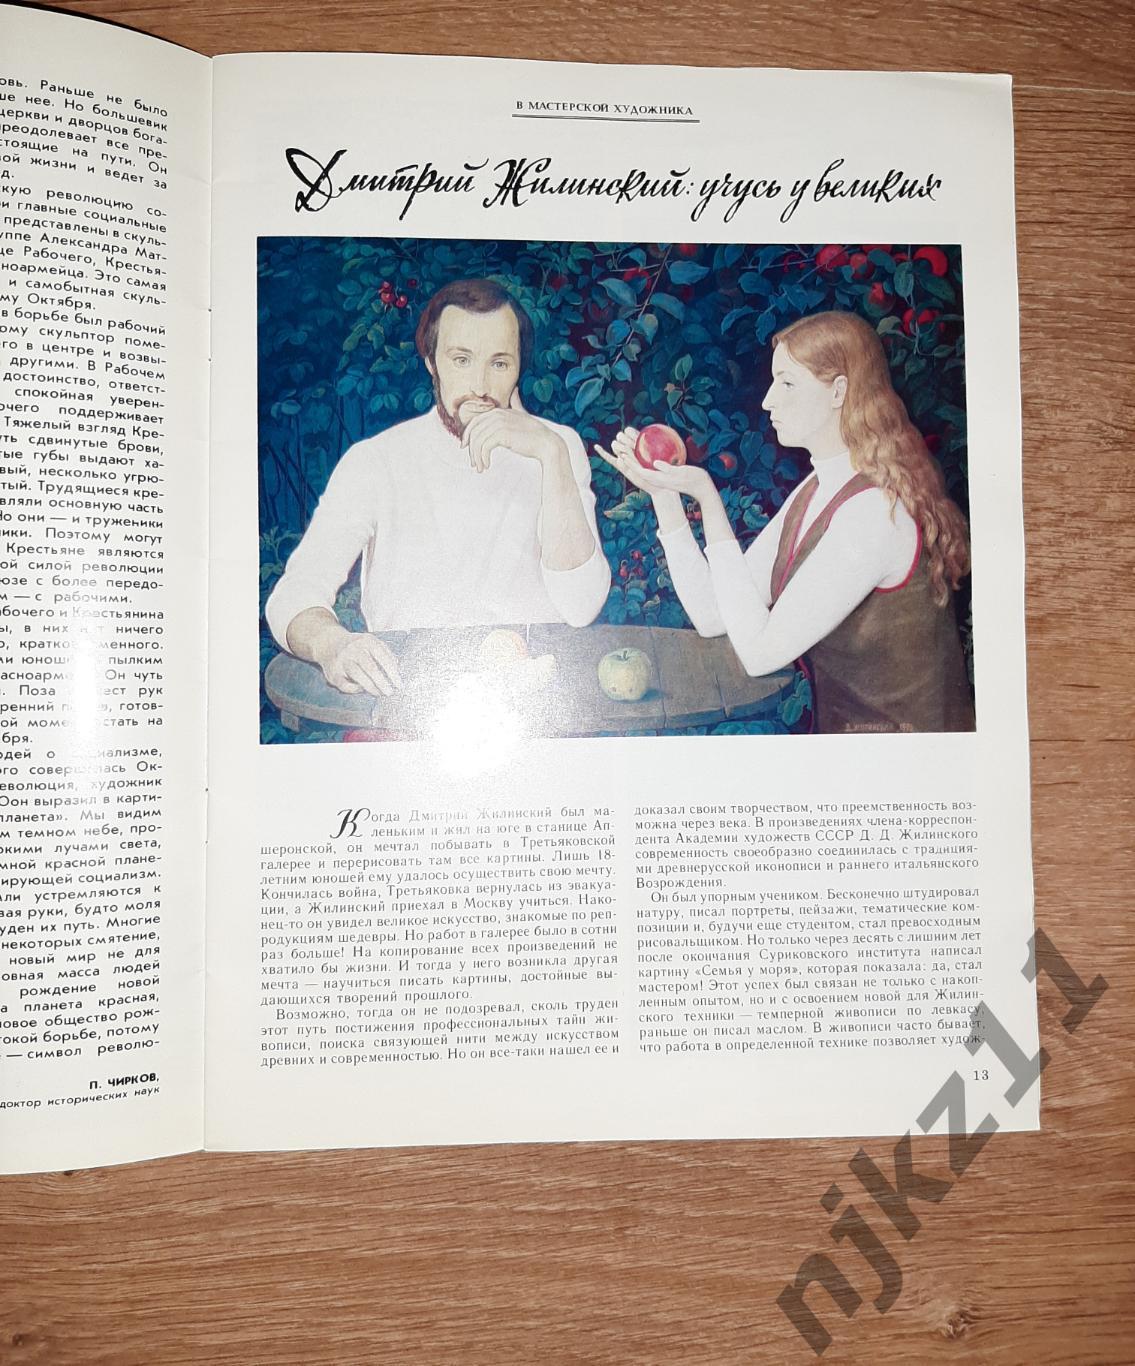 Журнал Юный Художник № 11 за 1987г Жилинский, Кустодиев 1